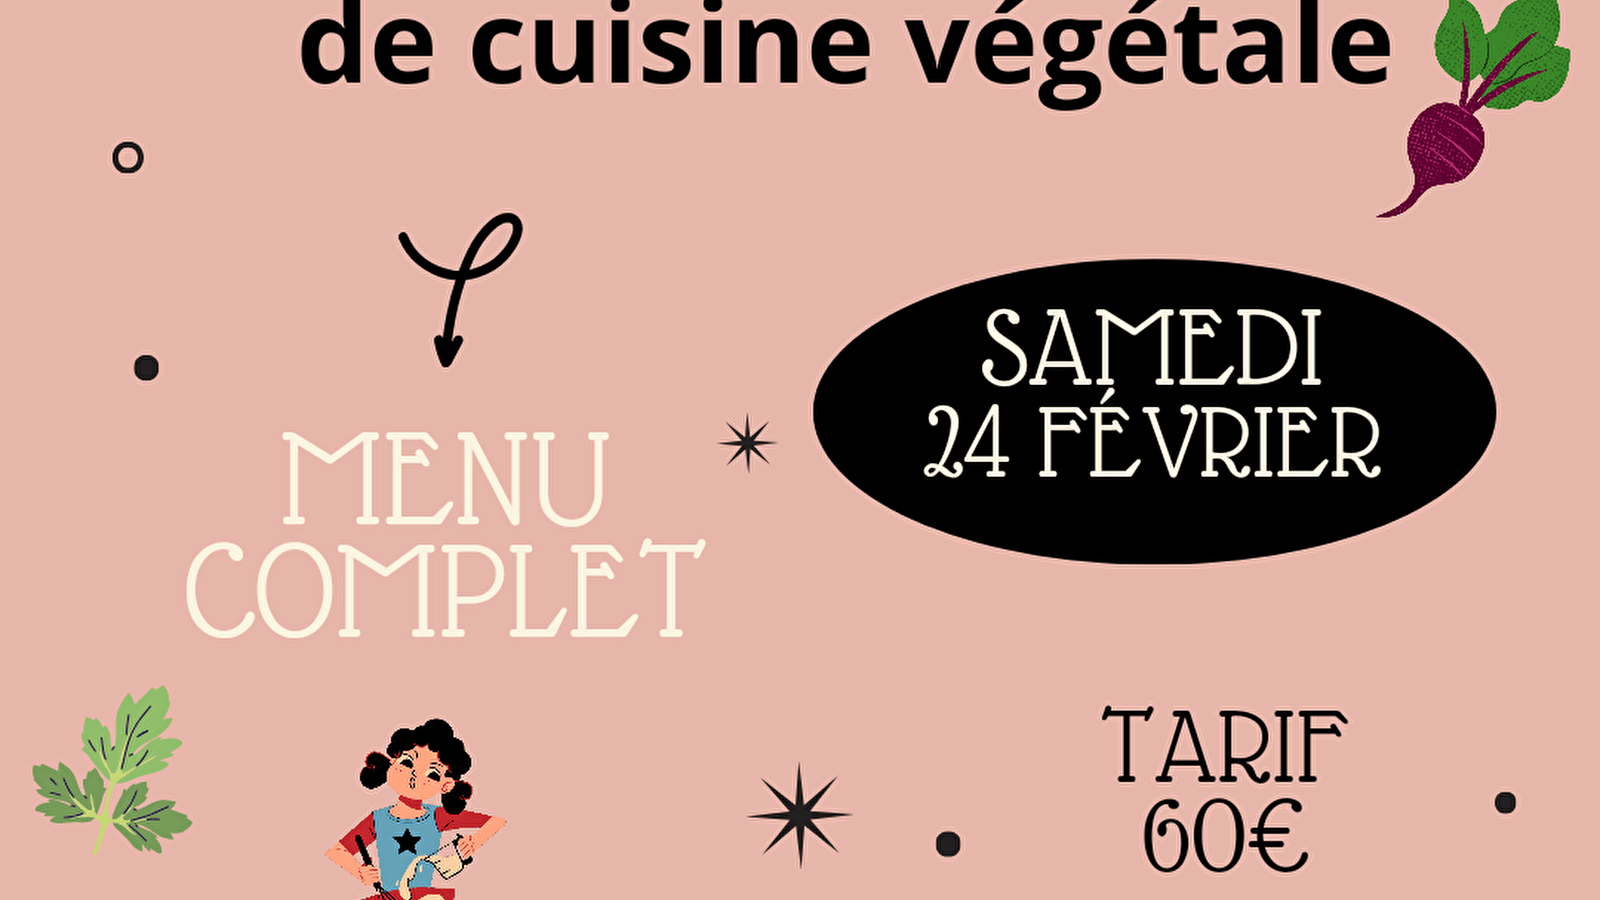 Atelier de cuisine végétale 'menu complet'